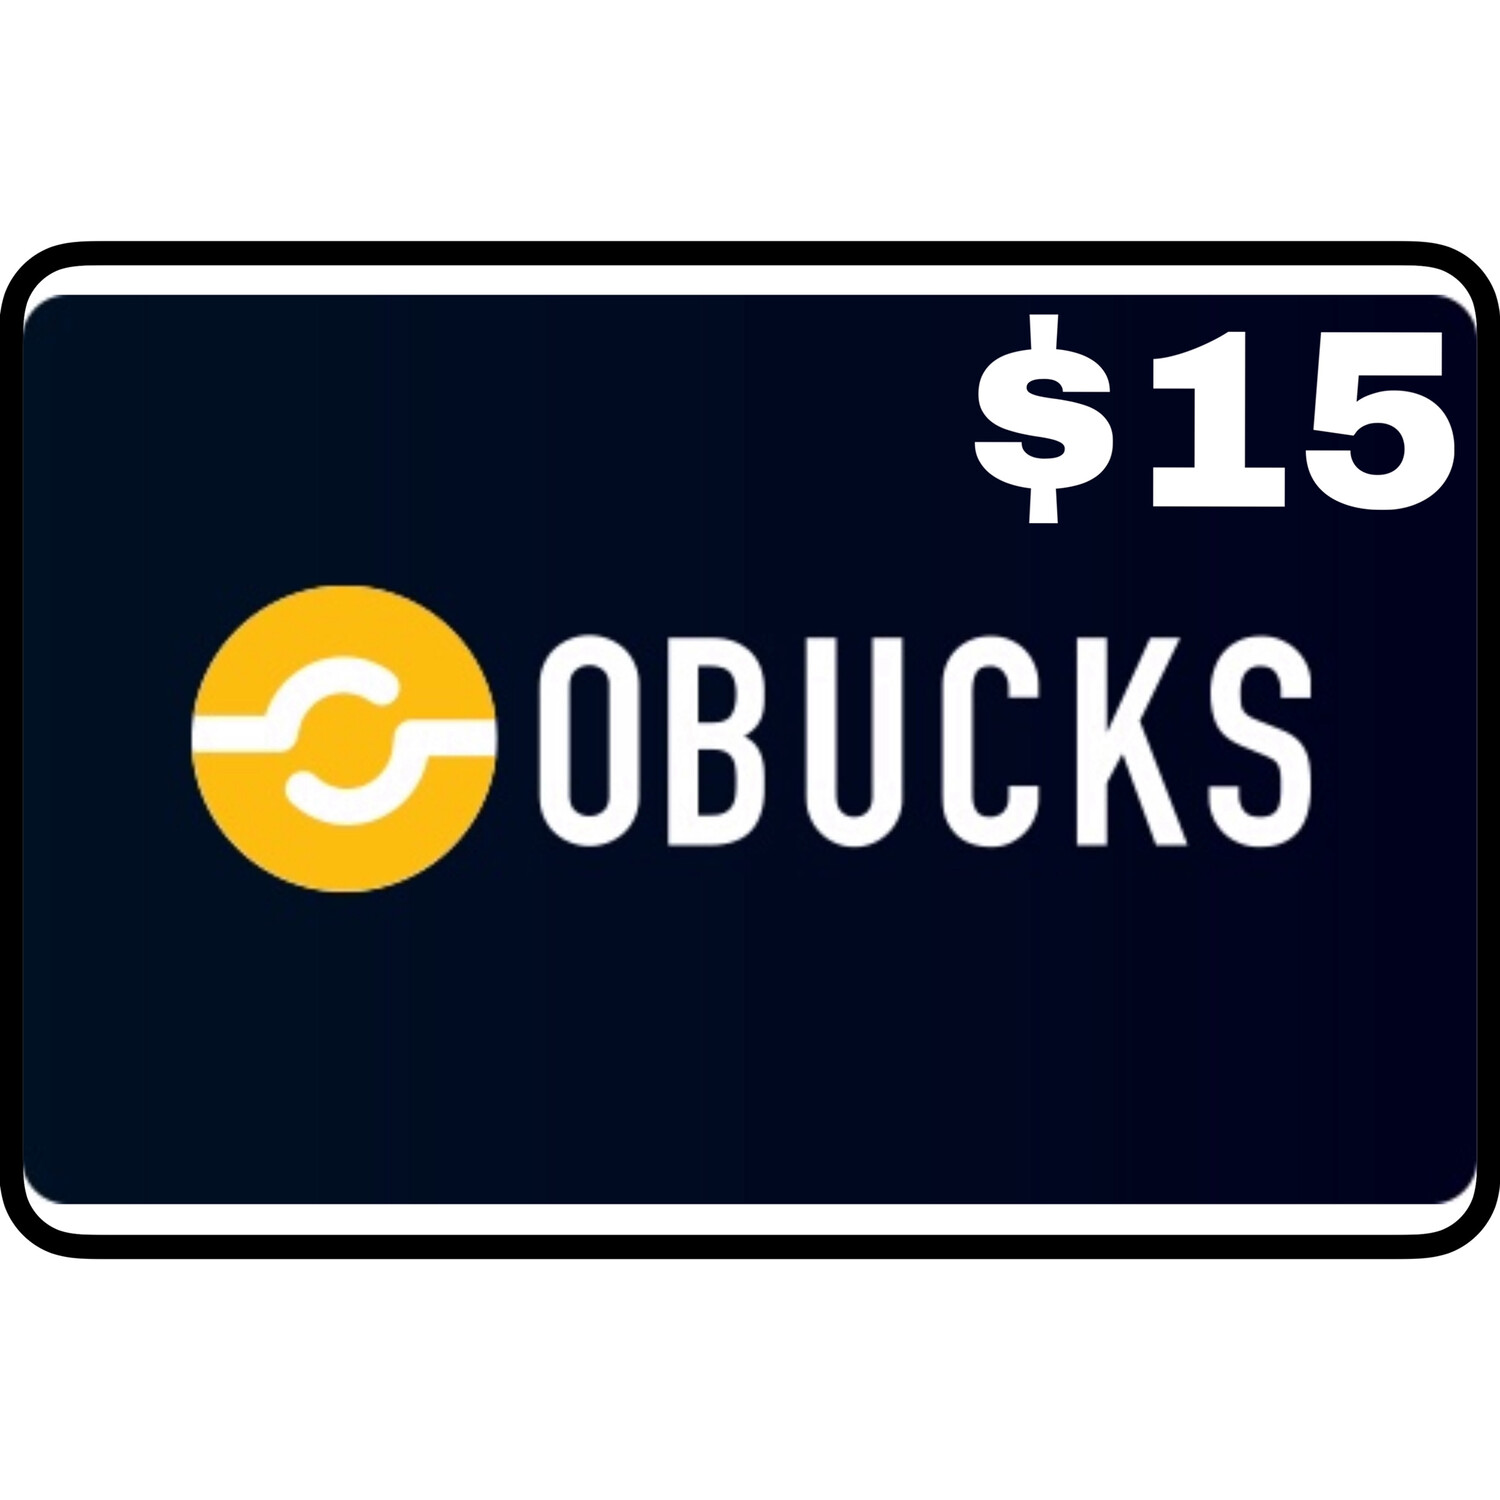 Openbucks Gift Card $15 (Obucks)